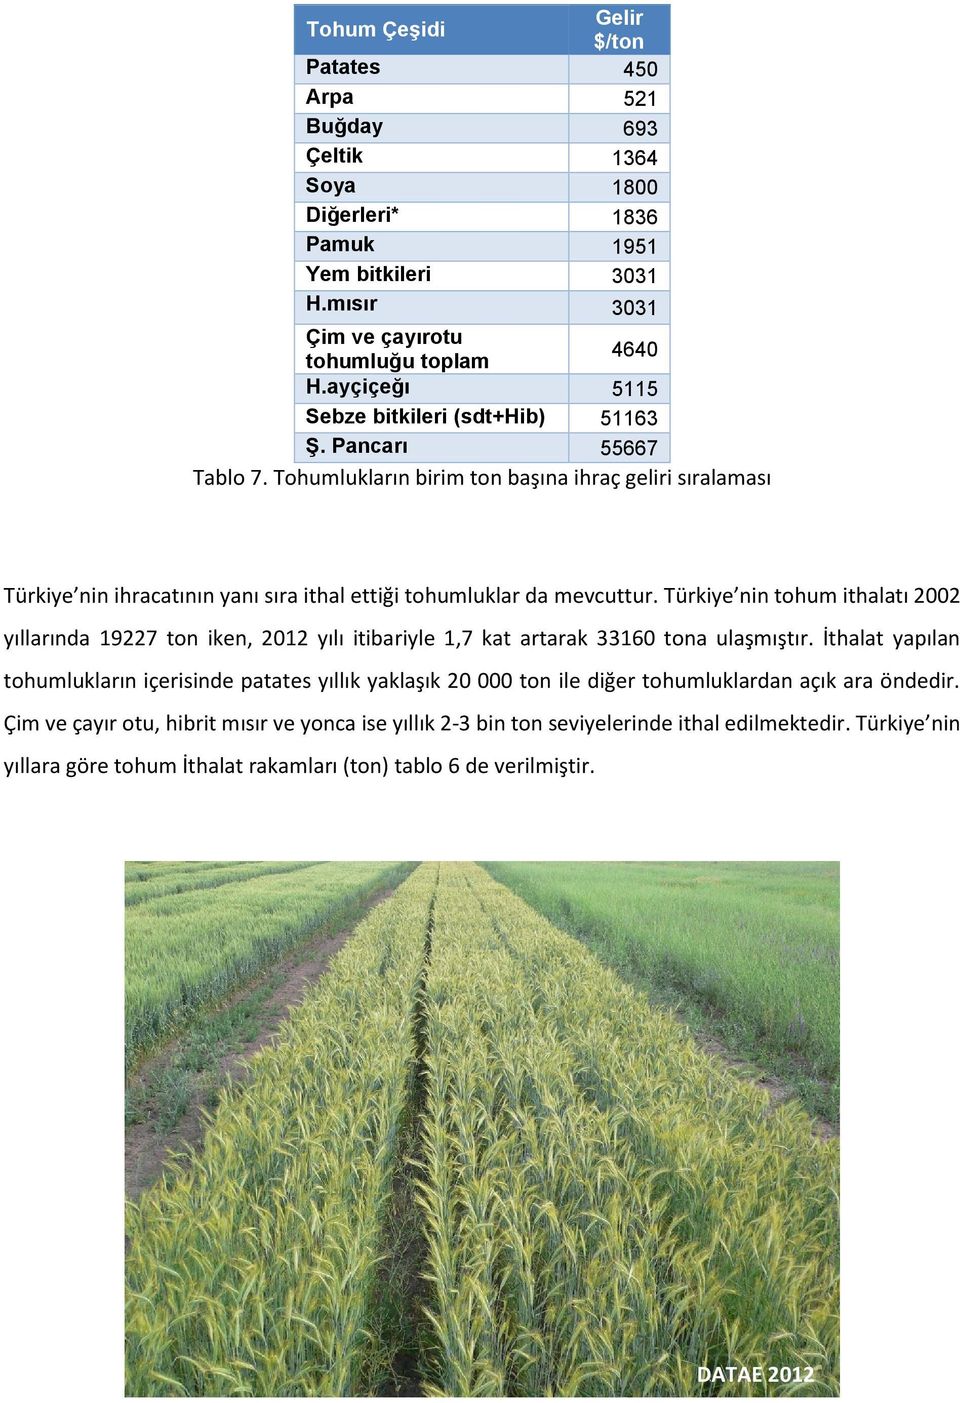 Türkiye nin tohum ithalatı 2002 yıllarında 19227 ton iken, 2012 yılı itibariyle 1,7 kat artarak 33160 tona ulaşmıştır.